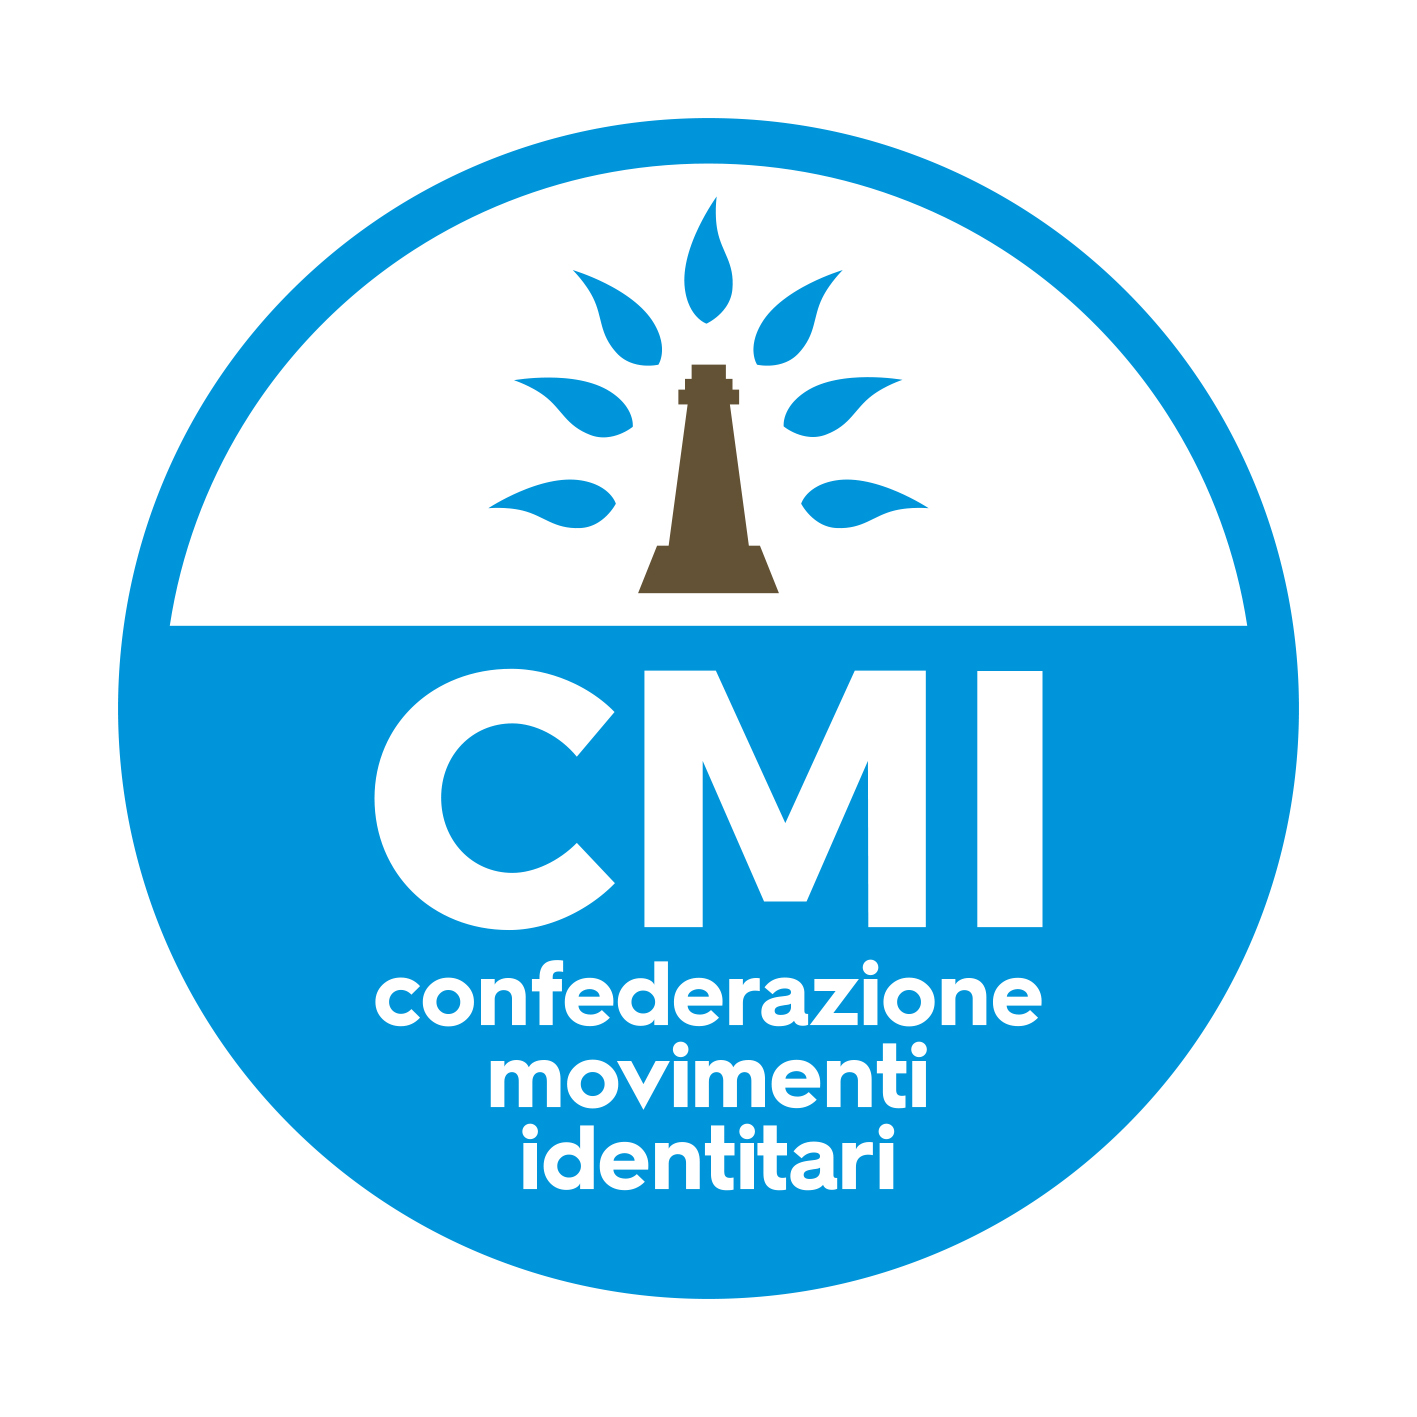 CMI coordina attività politiche meridionaliste